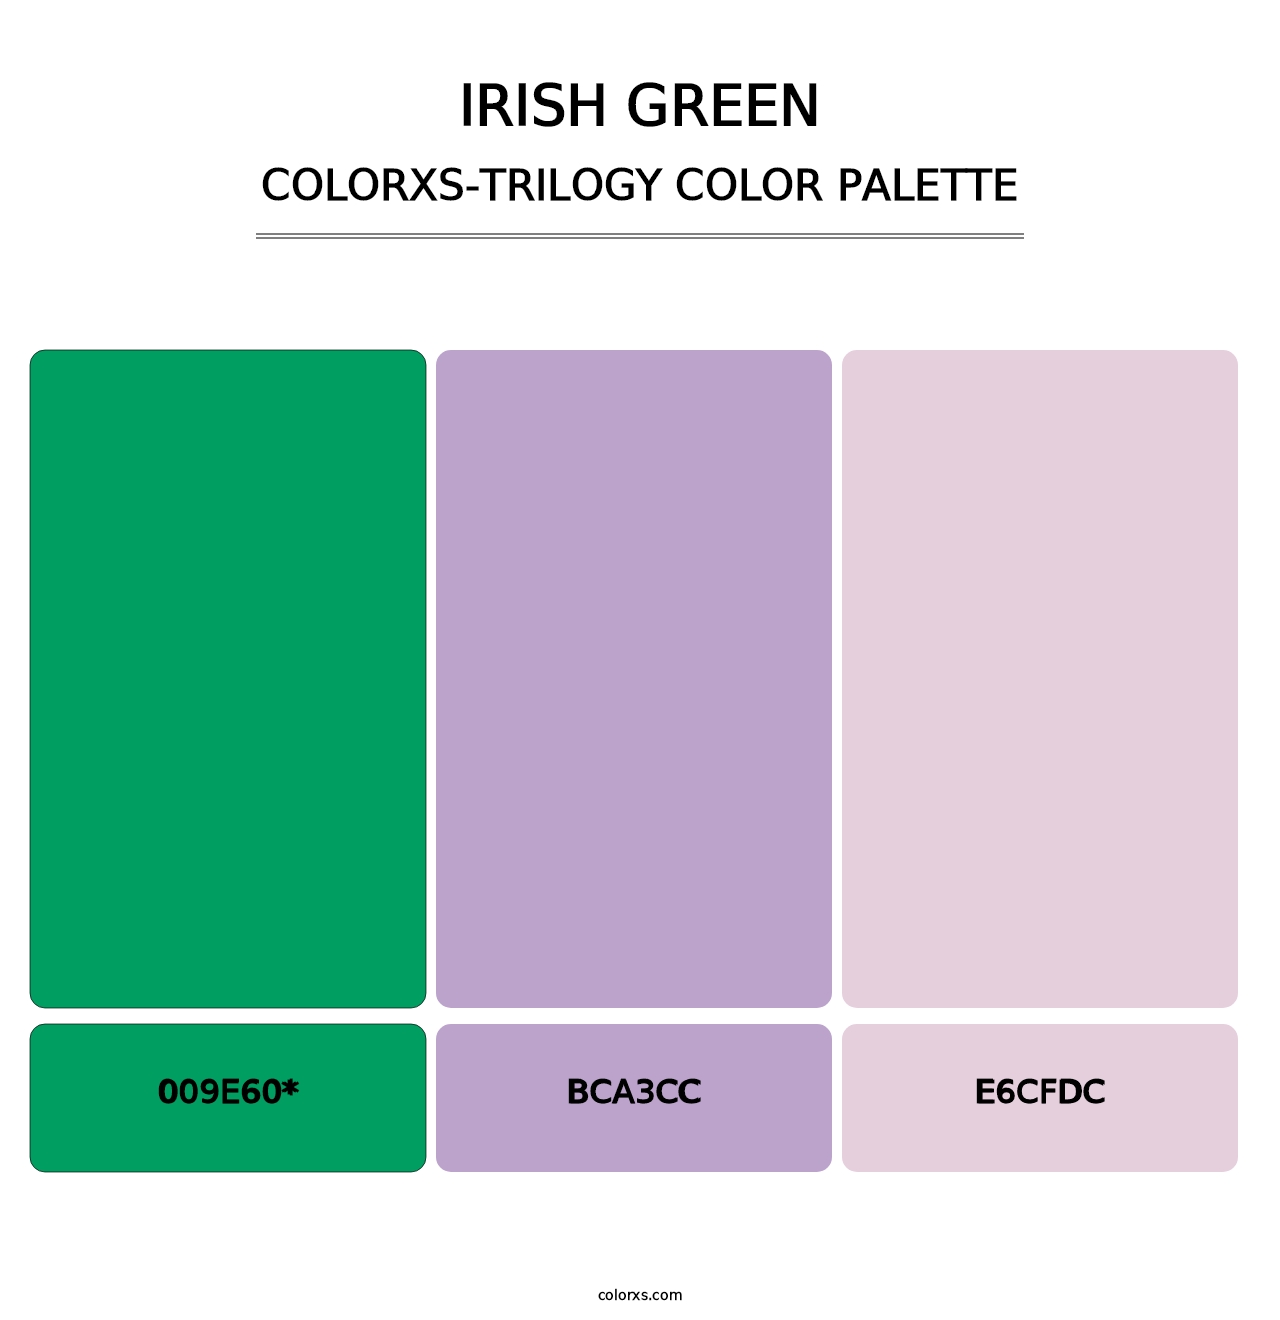 Irish Green - Colorxs Trilogy Palette